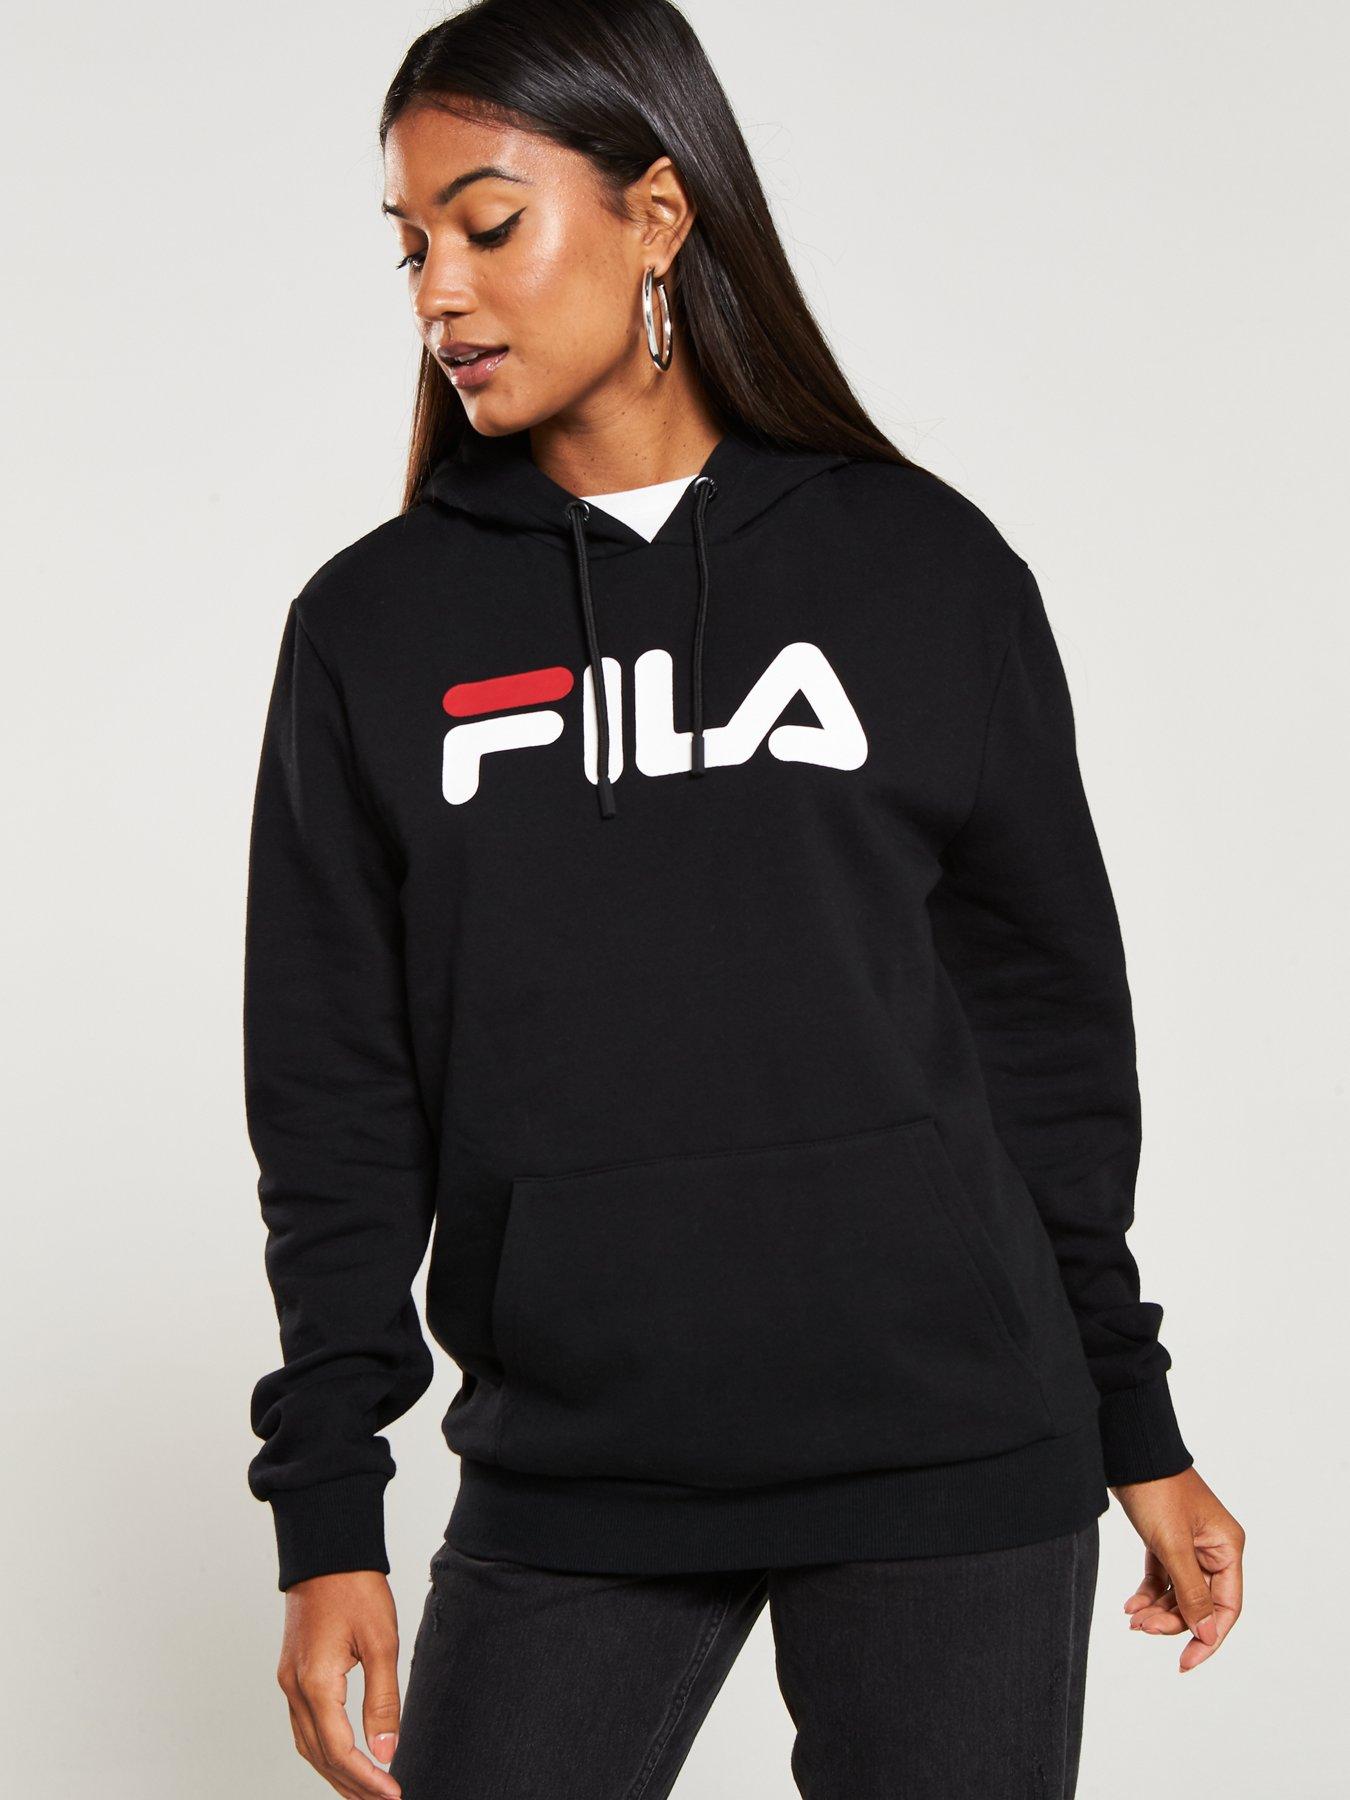 fila women's grey sweatshirt